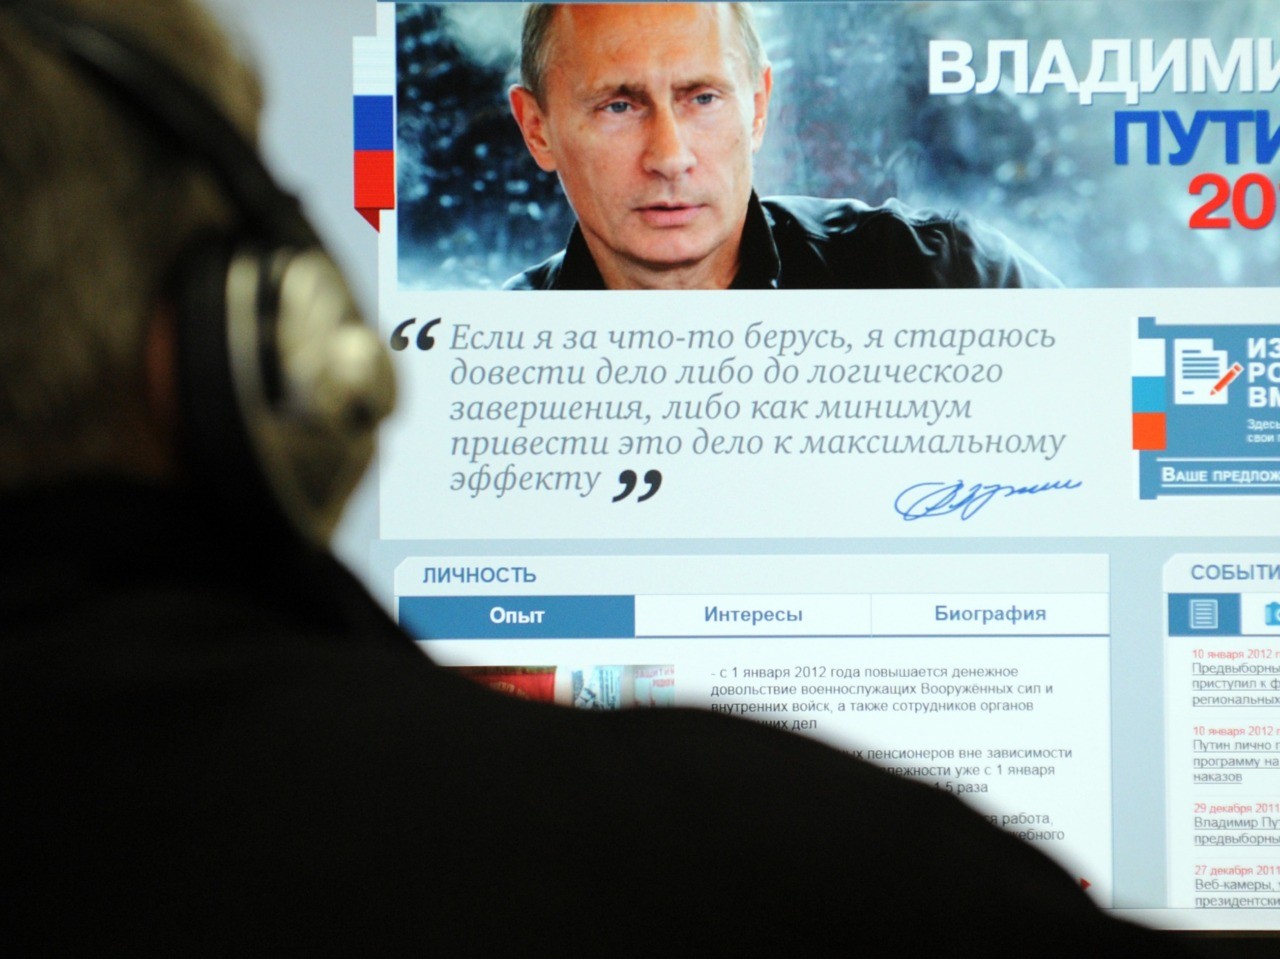 Программа Путина 2012